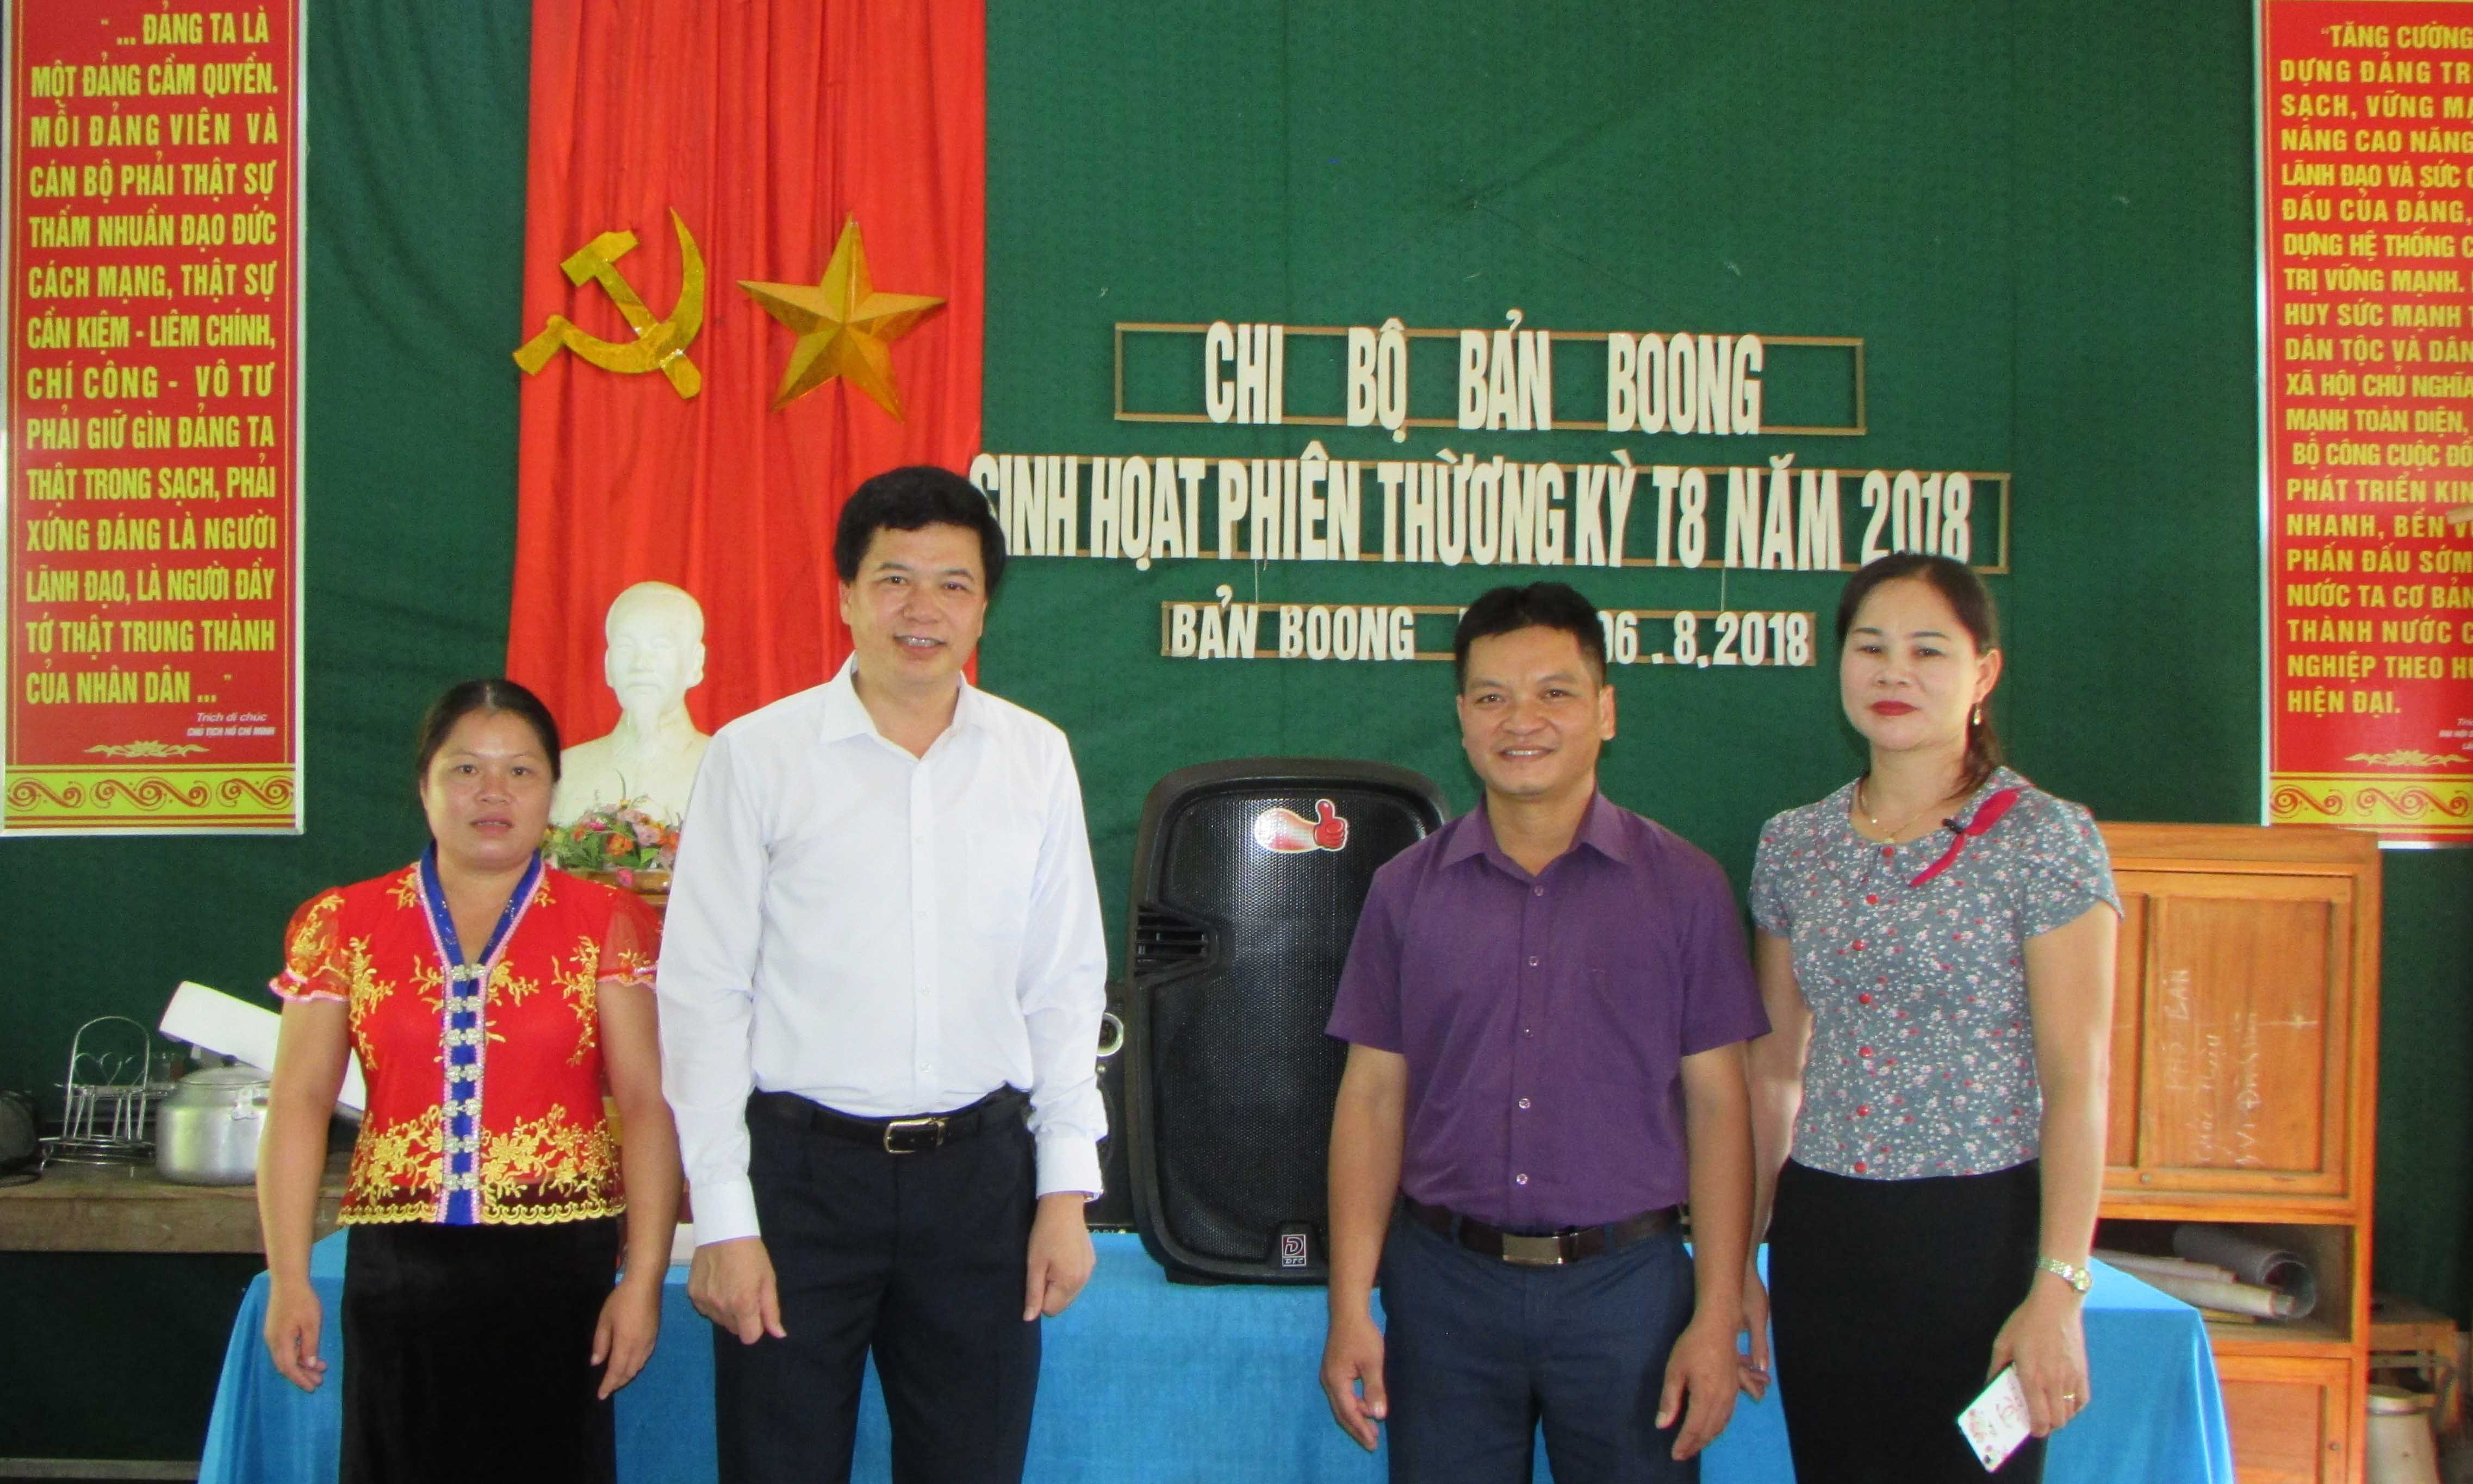 Bí thư Huyện ủy Con Cuông Nguyễn Đình Hùng tặng chi bộ bản Boong một chiếc loa phục vụ sinh hoạt. Ảnh: Bá Hậu